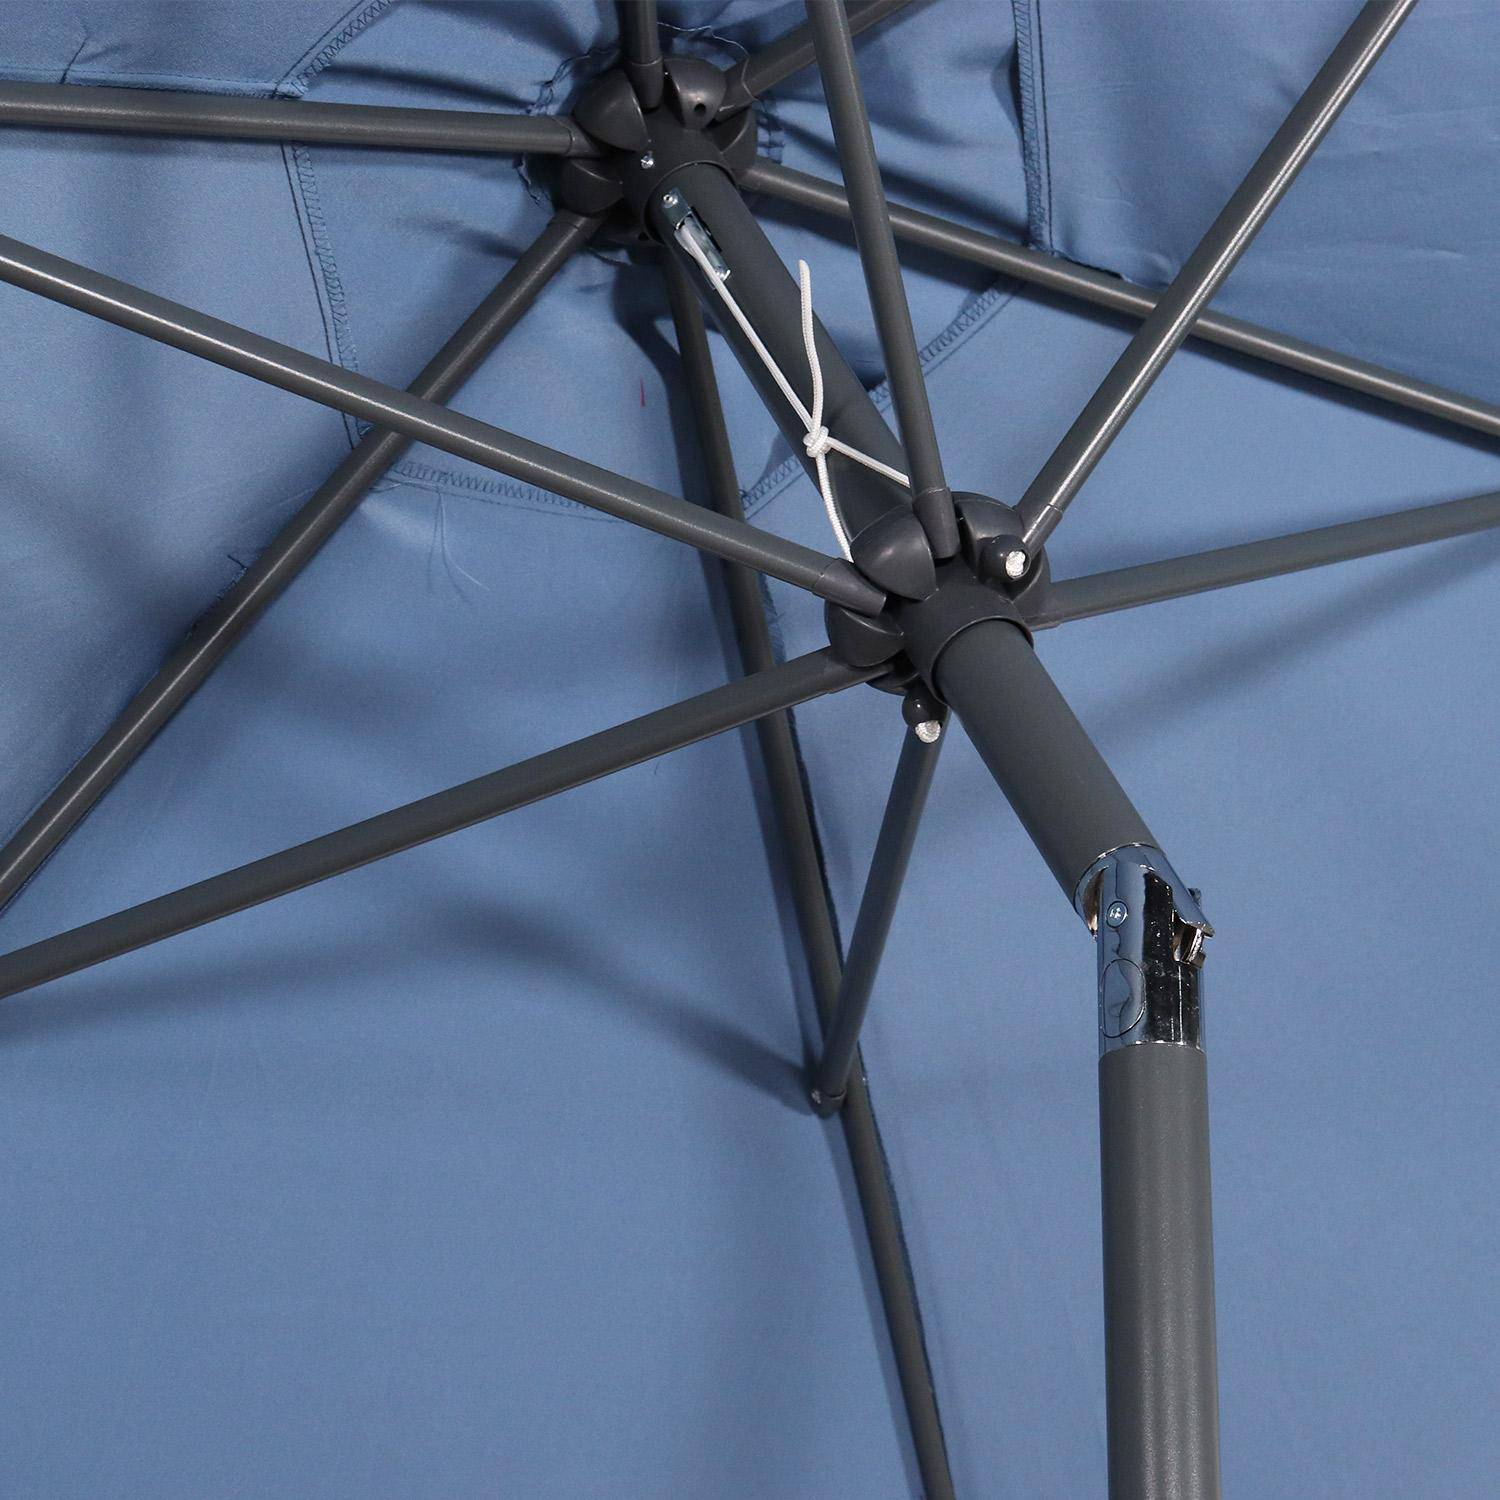 Ombrellone dritto, forma: rotonda, Ø300cm - modello: Touquet, colore: Blu ombreggiato - palo centrale in alluminio, orientabile, e manovella di apertura Photo7